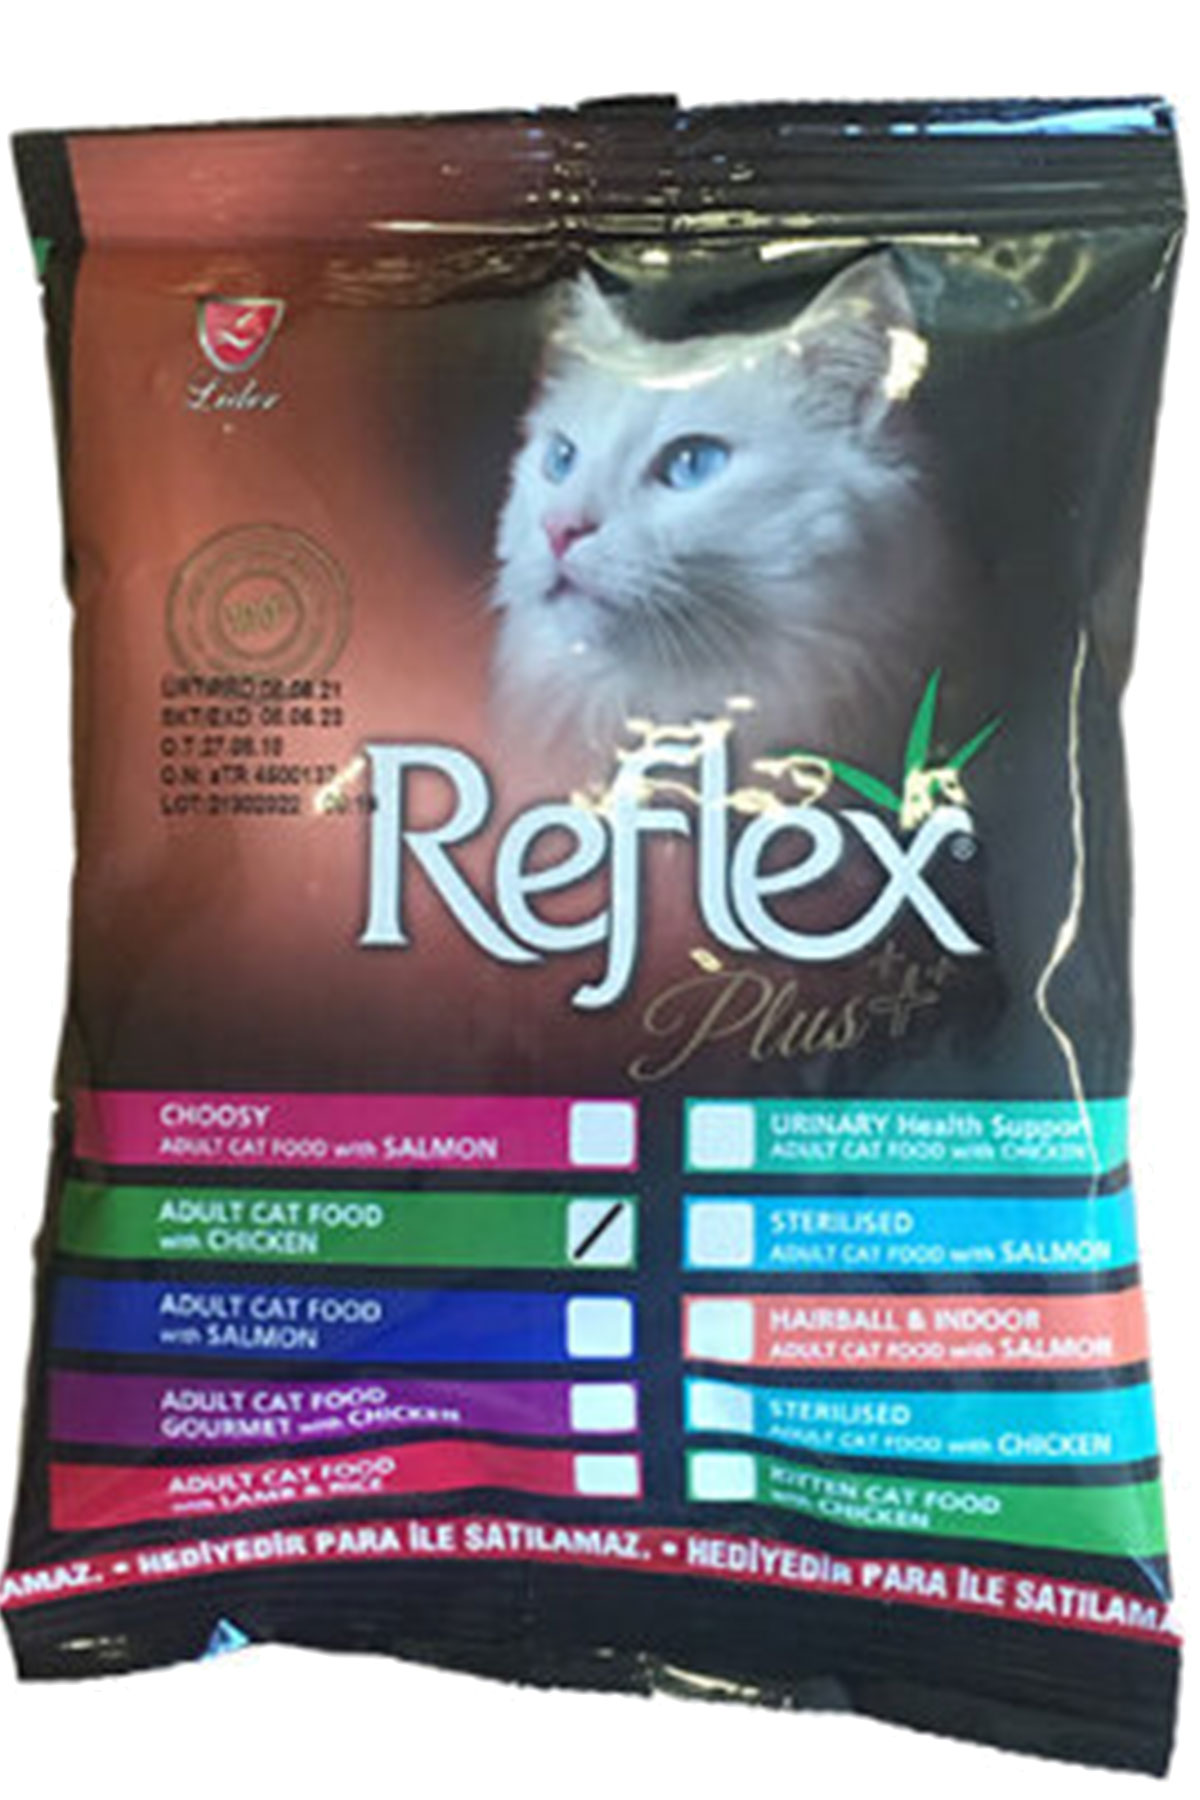 Reflex Plus Yetişkin Kedi Maması (Sokaktaki Dostlarımız için)